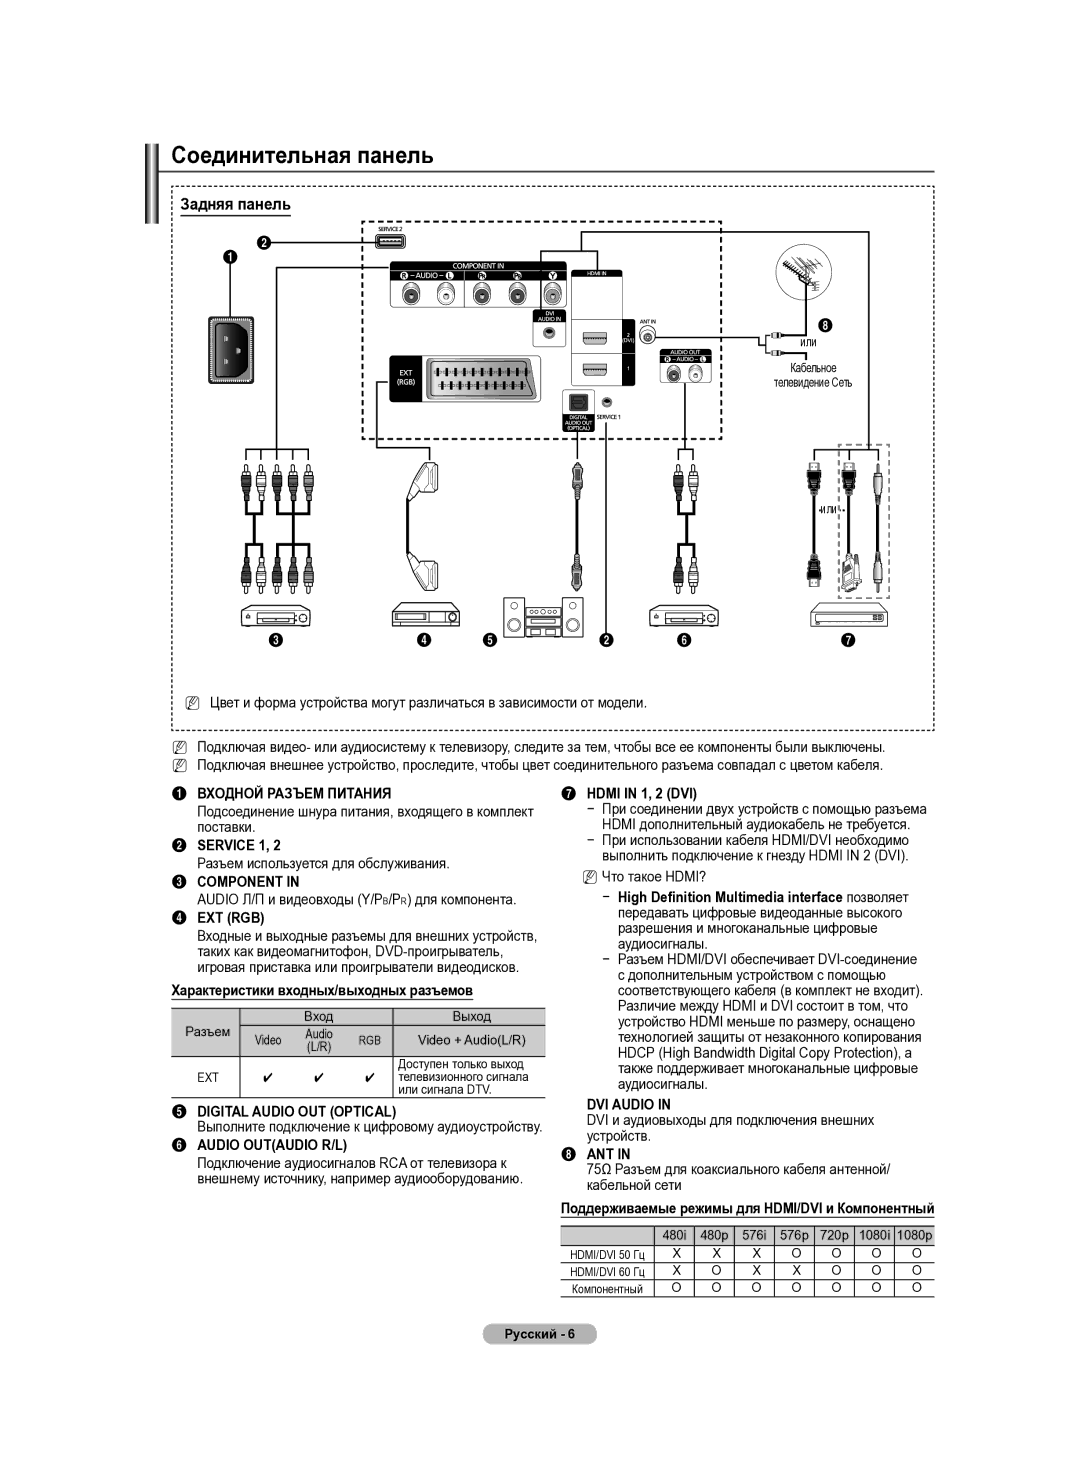 Samsung PS50B430P, PS42B430P manual Соединительная панель, Задняя панель, Входной Разъем Питания, Digital Audio OUT Optical 